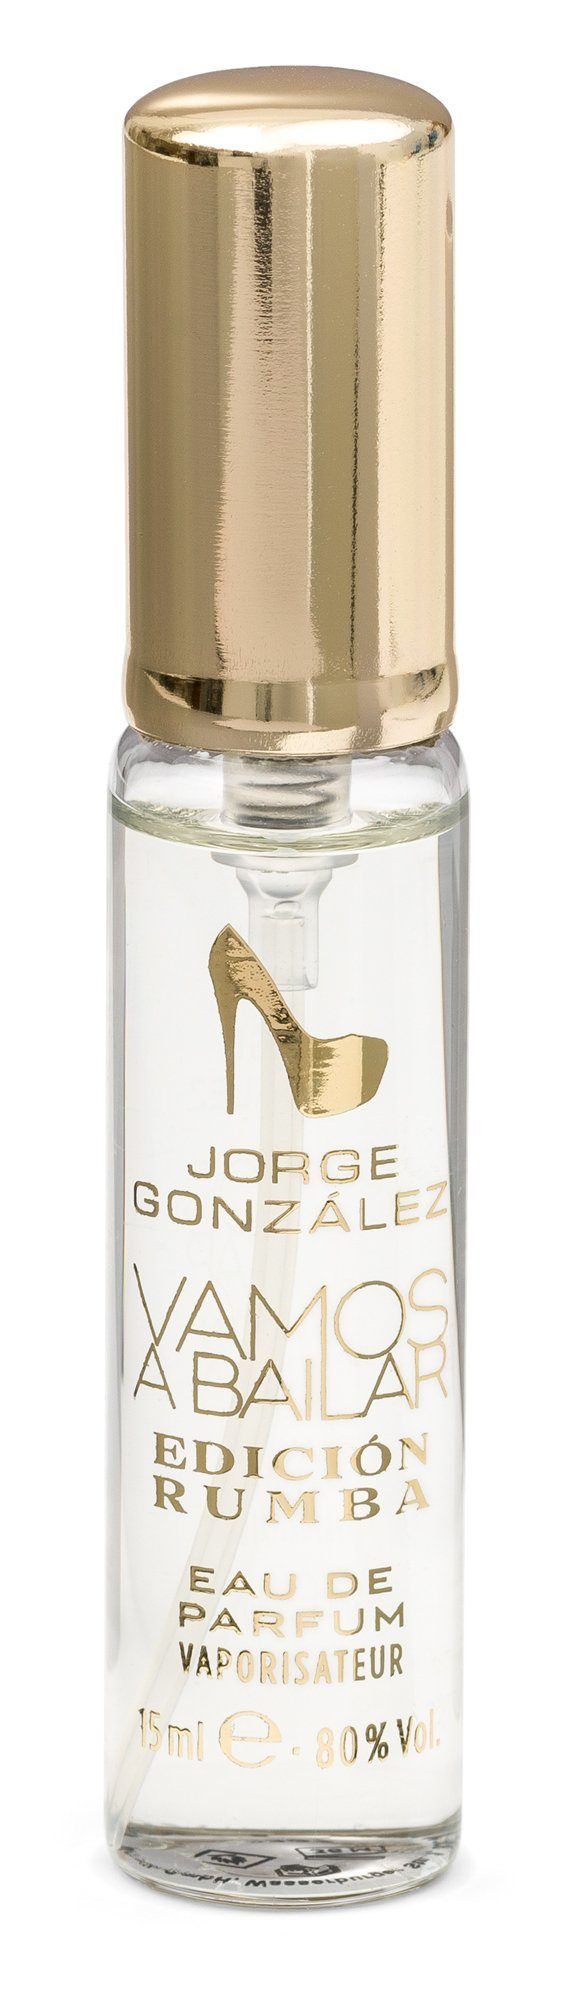 JORGE GONZÁLEZ Eau de Parfum ml; + de 15 EDICIÓN Eau Frauen Duft Parfum, Duftset 100 ml RUMBA für